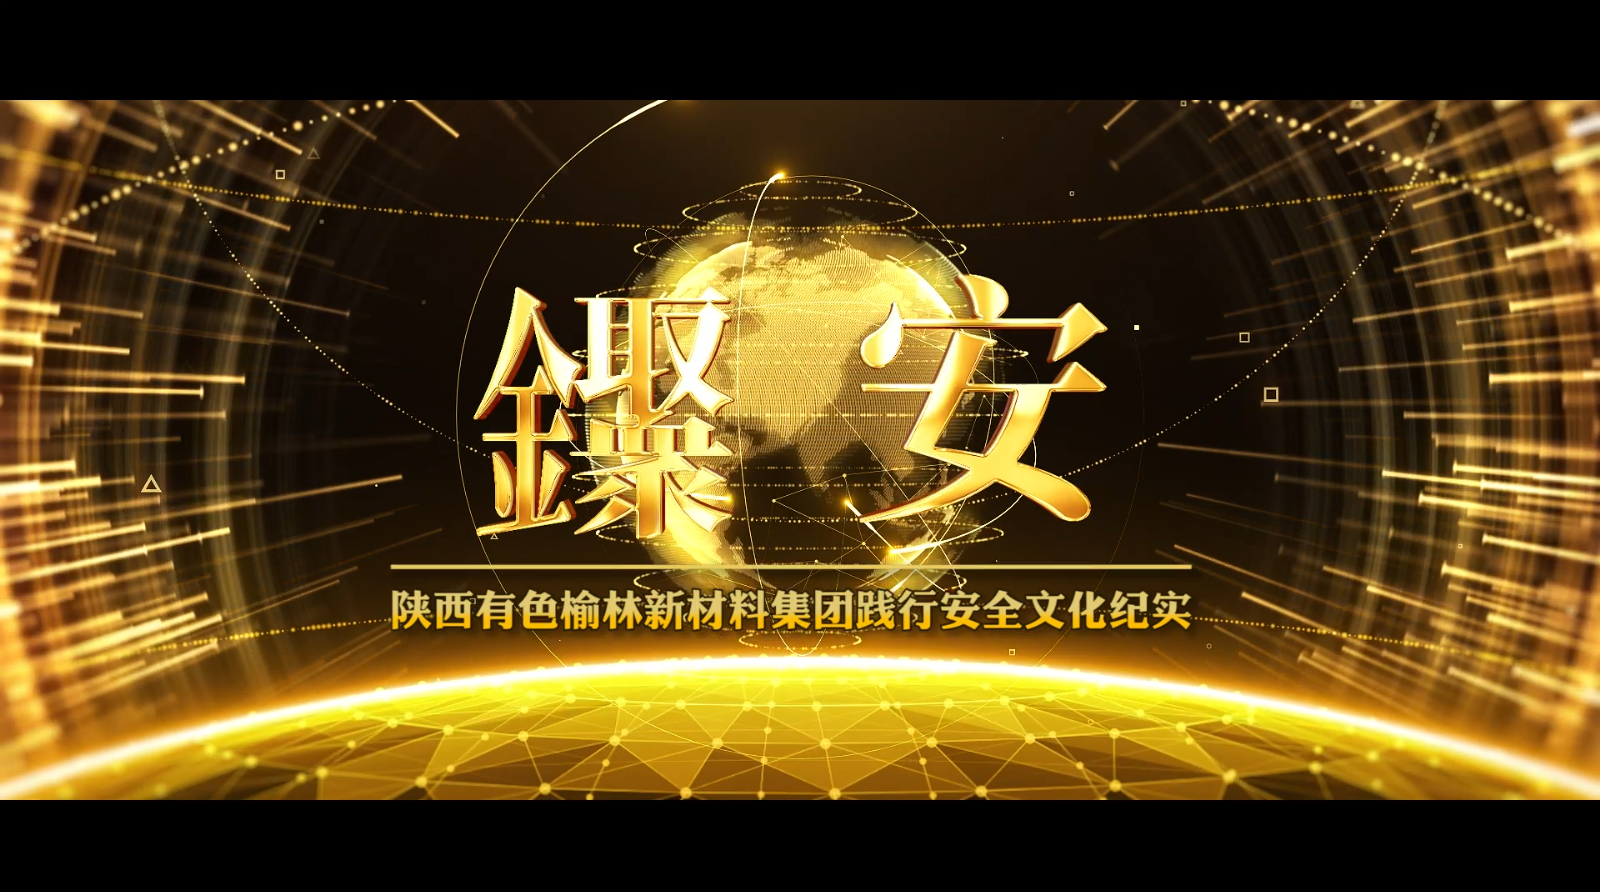 陕西有色亚洲第一品牌威尼斯澳门人安全文化宣传片《聚·安》